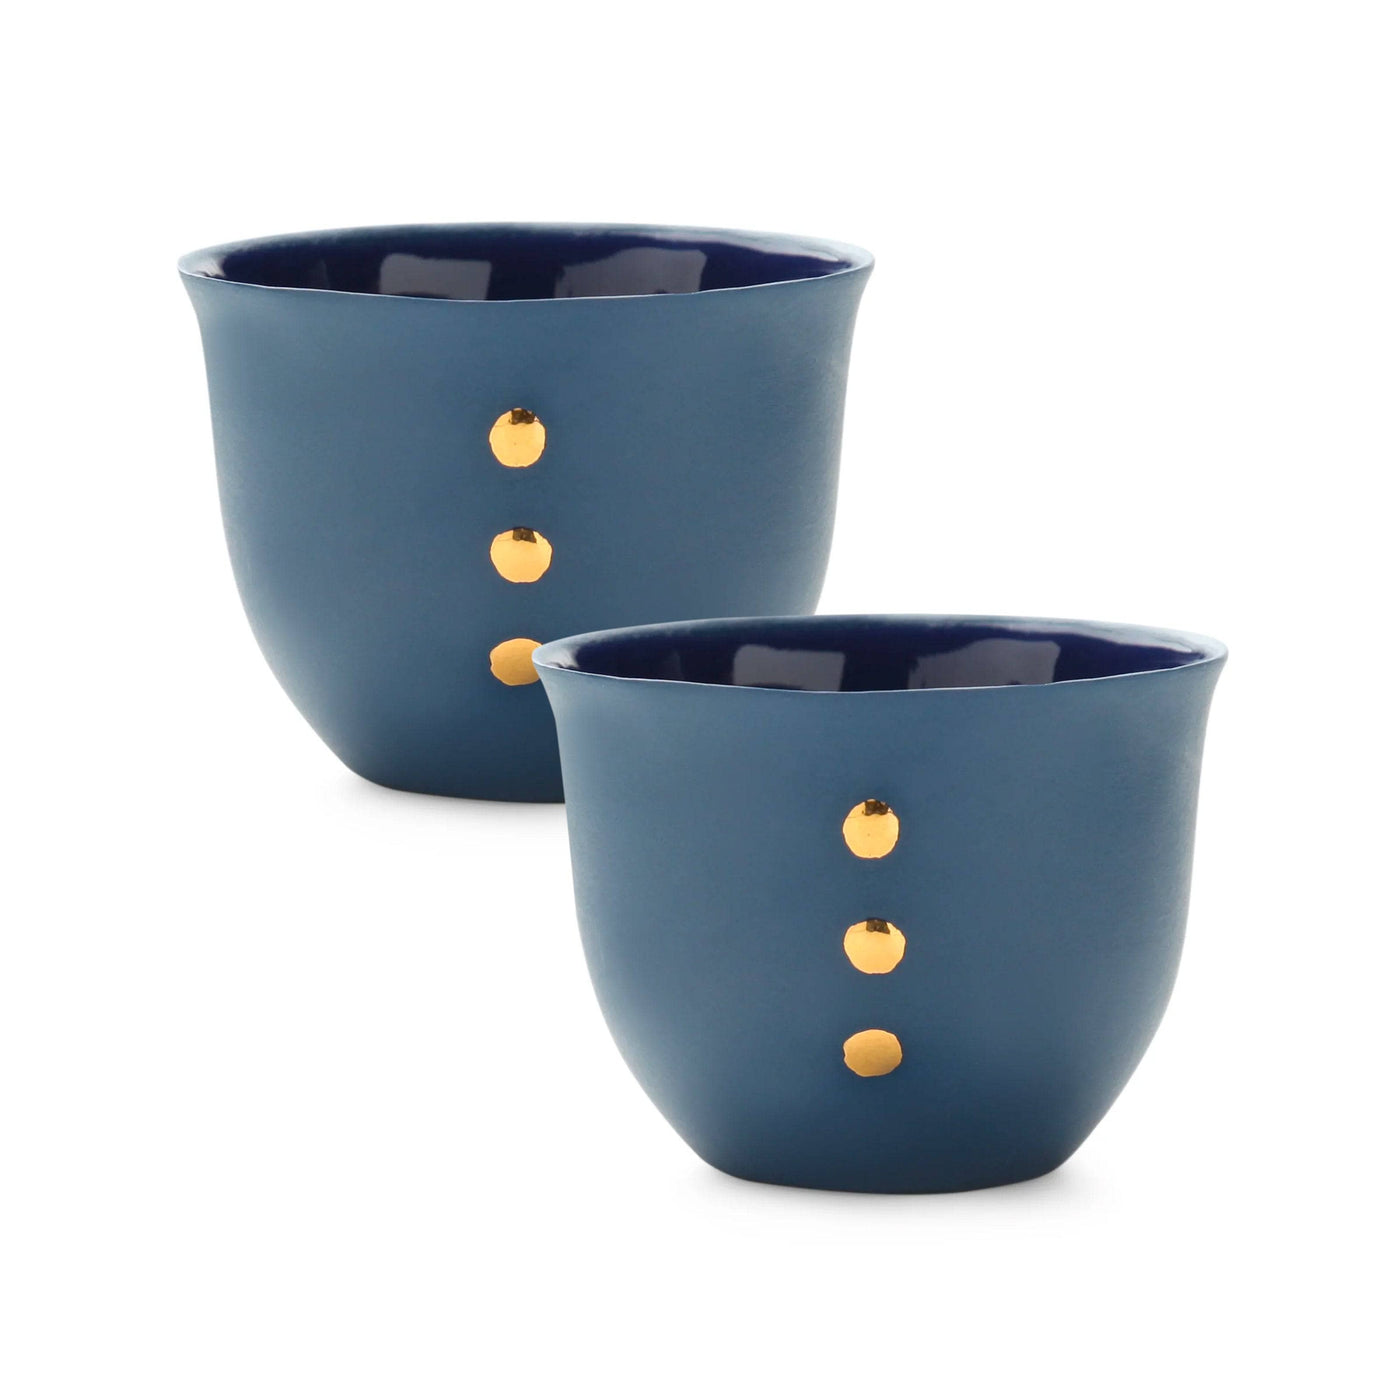 Handmade Nocturnal Set of 2 Espresso Cups, Navy Cups & Mugs sazy.com